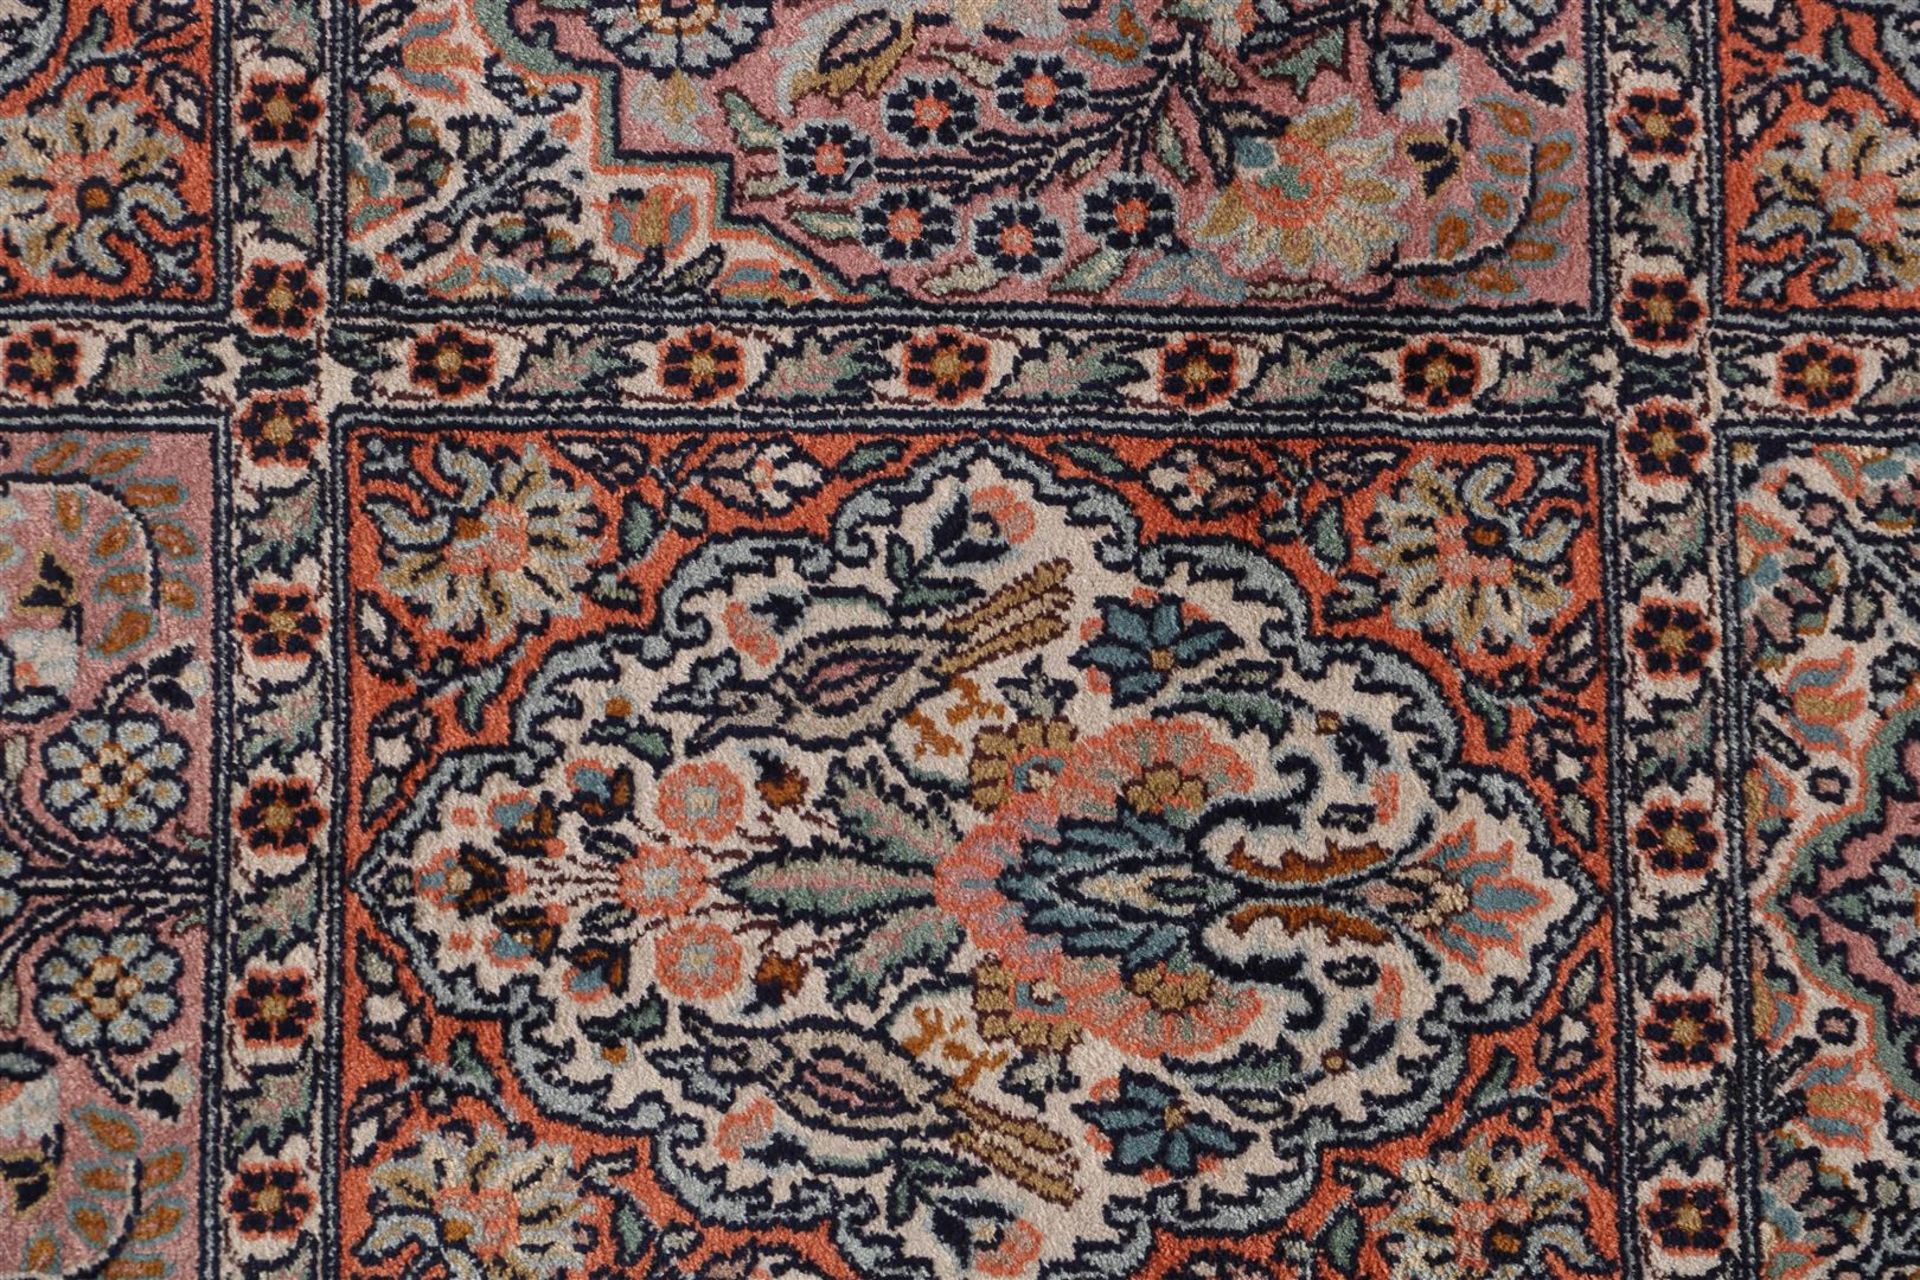 Hand-knotted oriental carpet, Kashmir India - Bild 2 aus 4